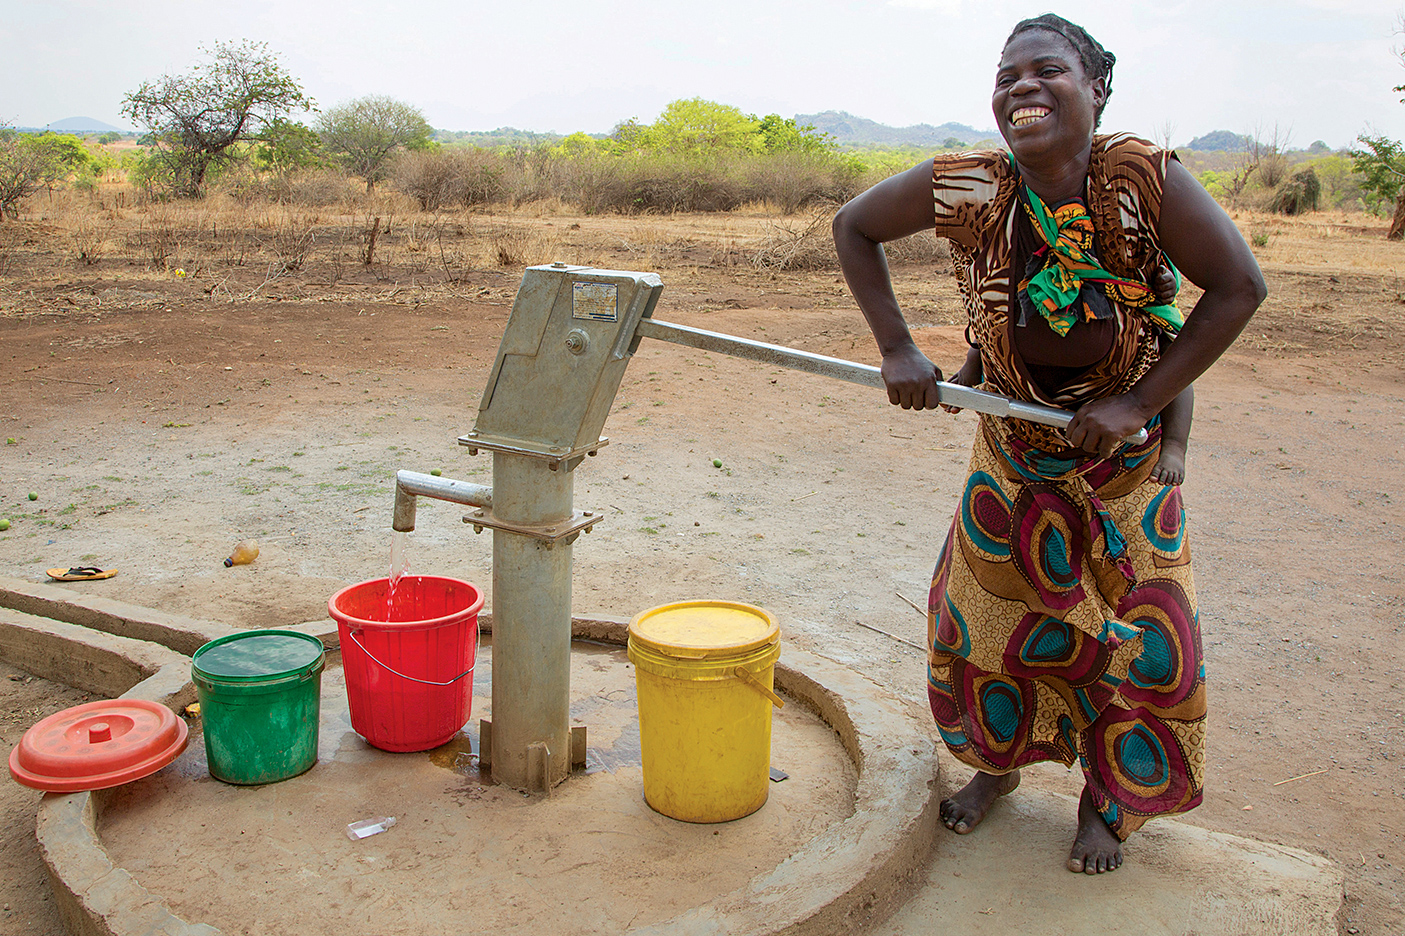 Woman pumping water in Zambian village